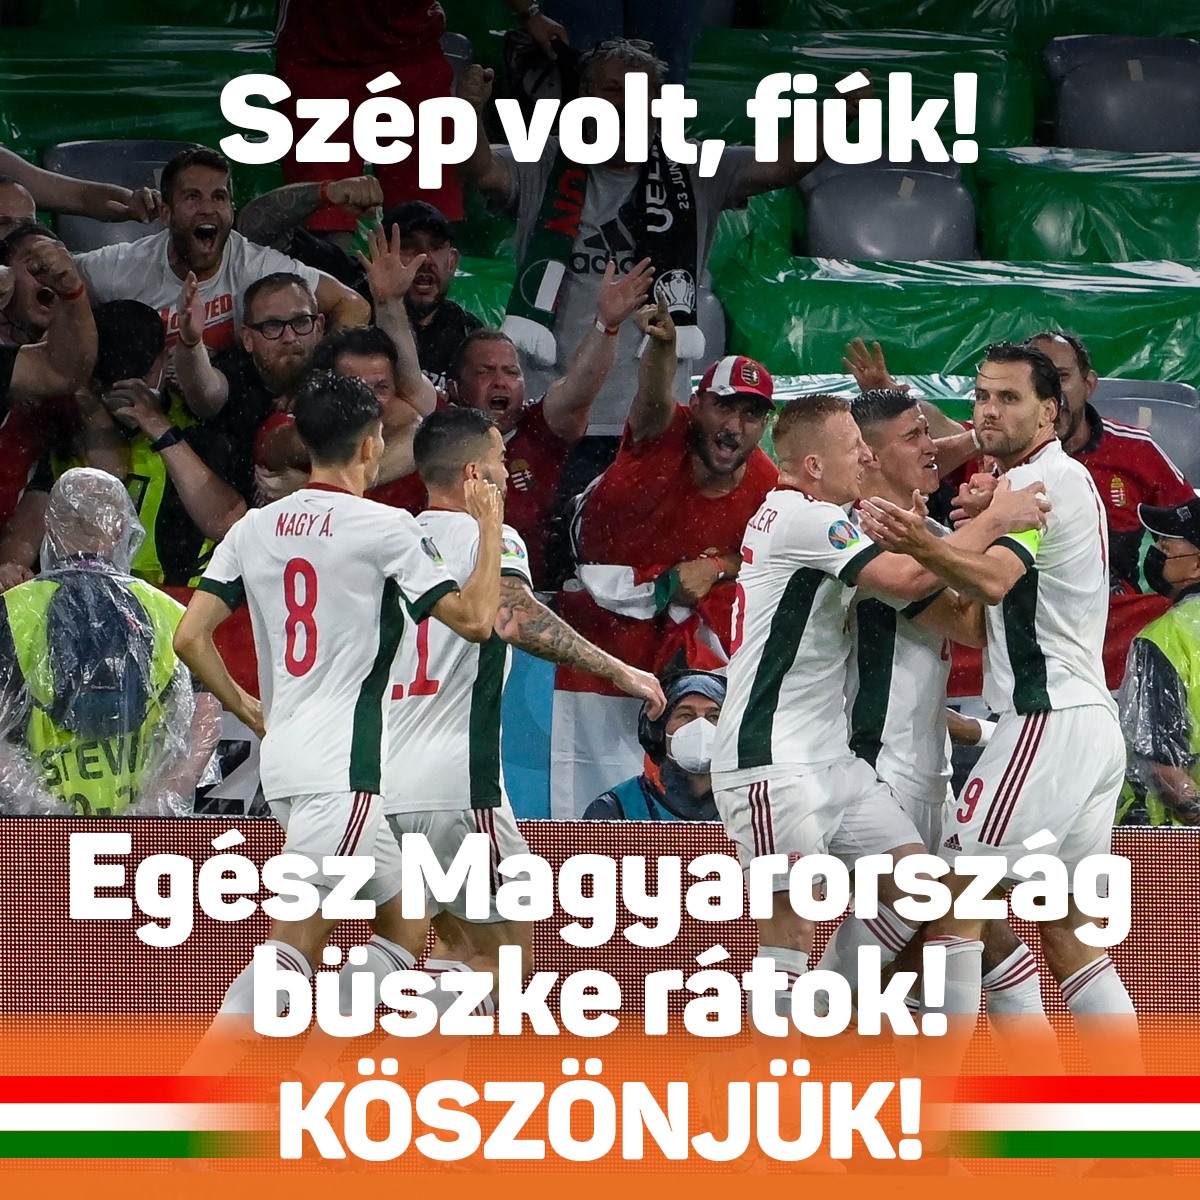 A magyarok ismét csodásan játszottak! Végig hősiesen küzdött a válogatott!  Egész Magyarország büszke rátok! Köszönjük, fiúk!